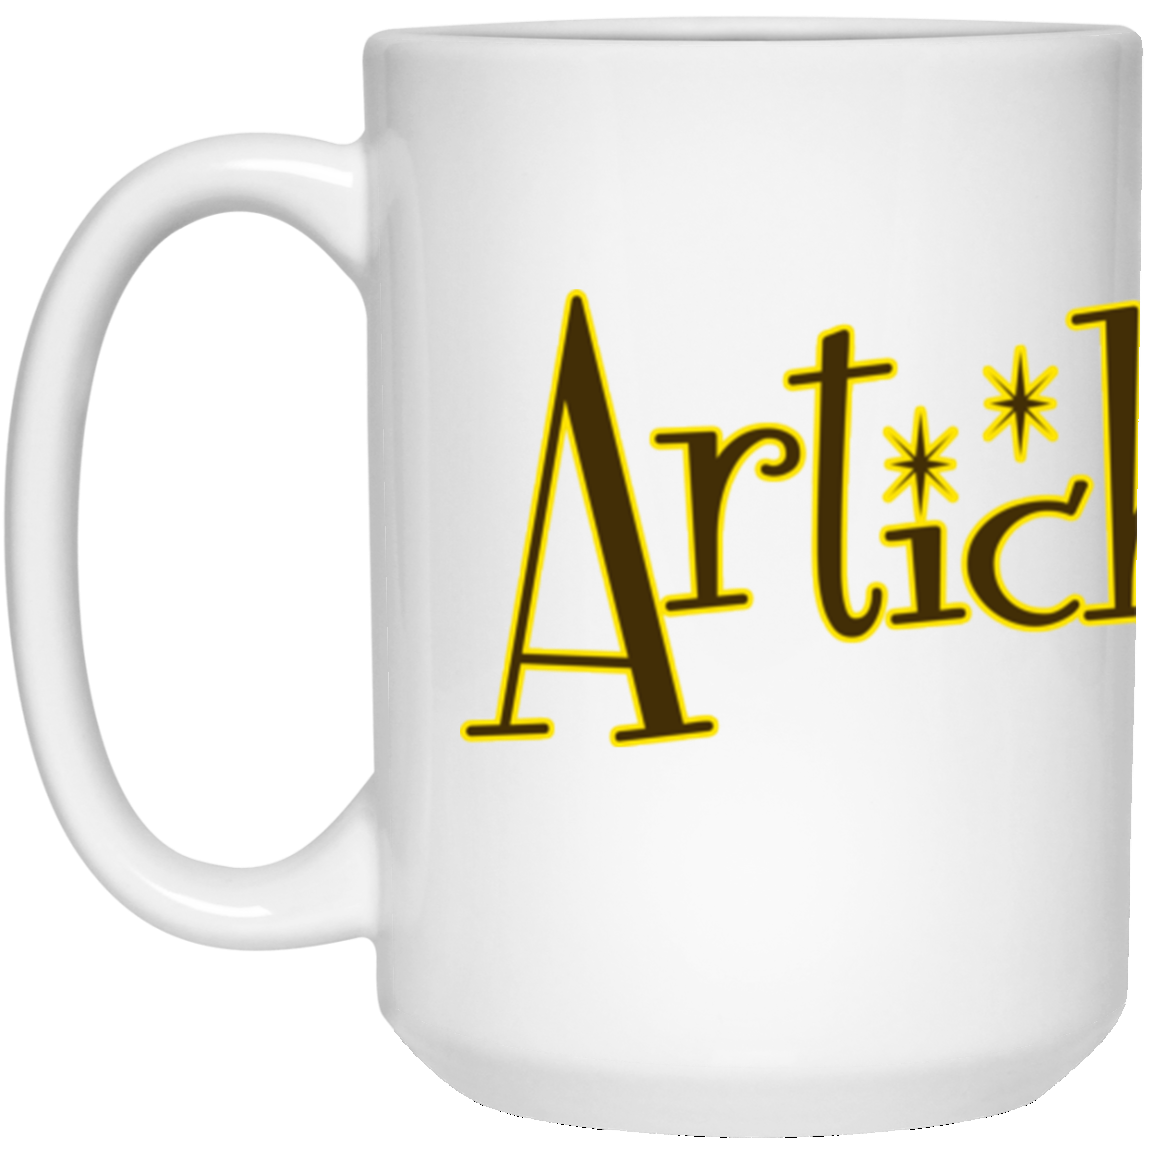 ArtichokeUSA custom design with text #18. 15 oz. White Mug